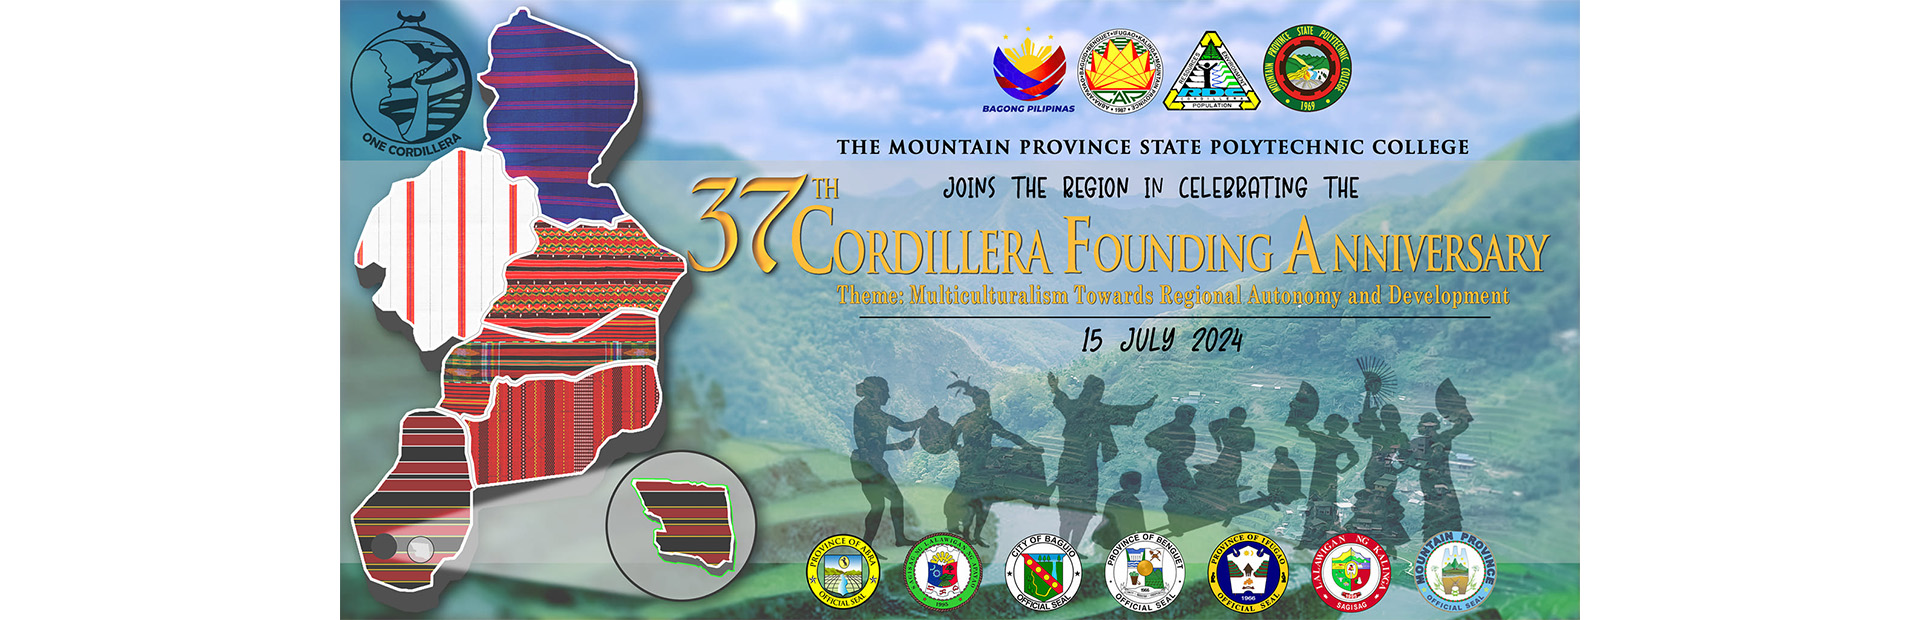 Cordillera day 2024